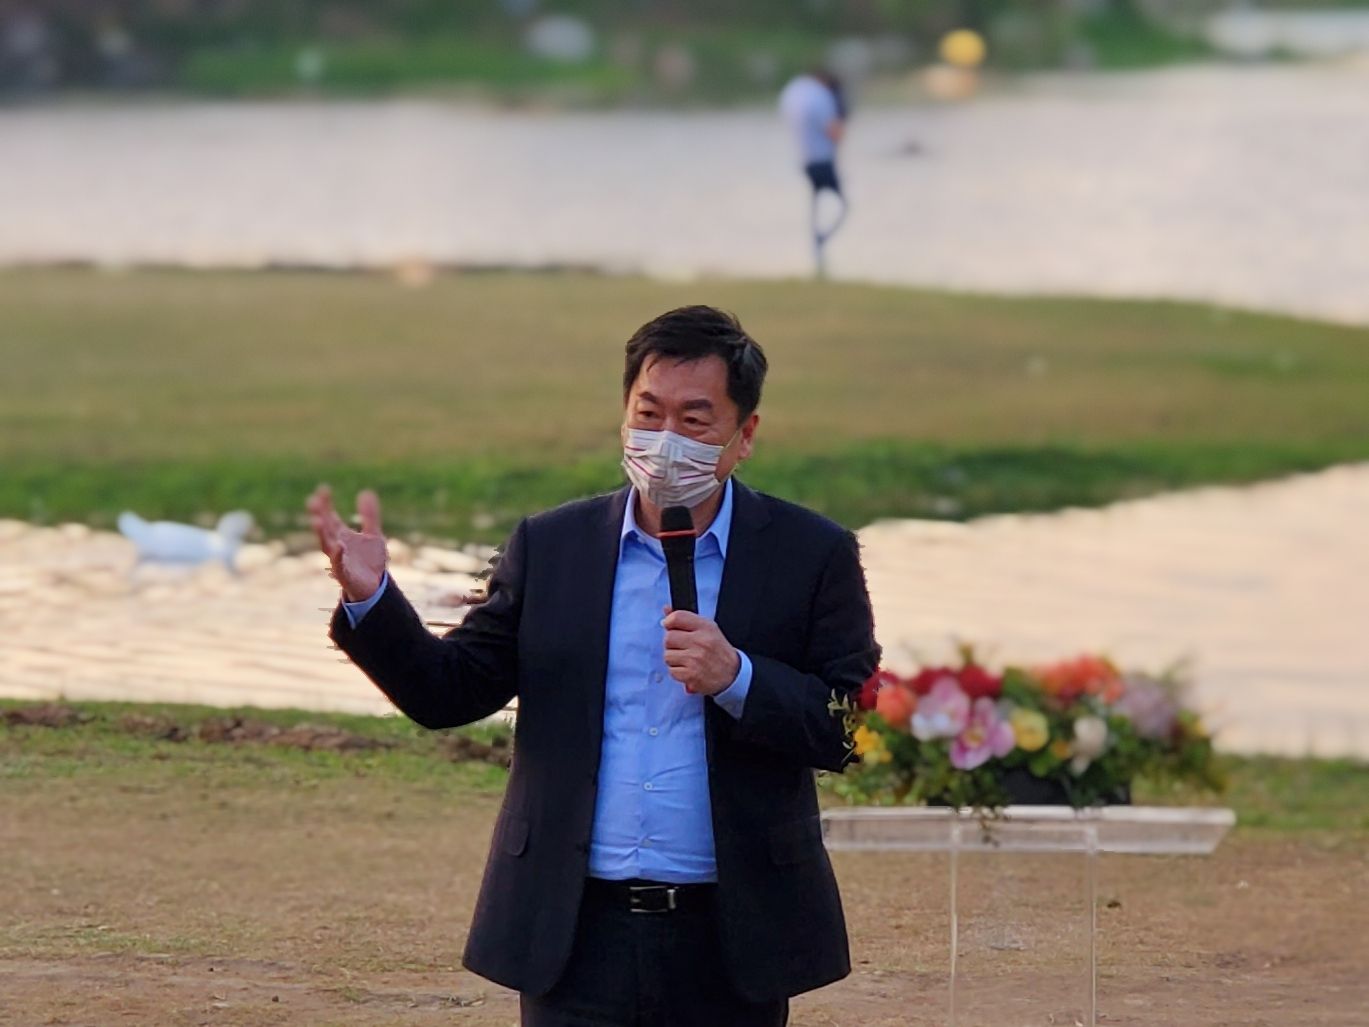 นายเฉินจงเยี่ยน (陳宗彥) รัฐมนตรีว่าการกระทรวงมหาดไทย เดินทางไปร่วมงานเทศกาลโคมไฟไต้หวัน ประจำปี 2022 ณ ศูนย์ศิลปะแห่งชาตินครเกาสงหรือเว่ยอู่อิ๋ง เมื่อวันที่ 18 กุมภาพันธ์ที่ผ่านมา ภาพจาก／สำนักงานตรวจคนเข้าเมือง 